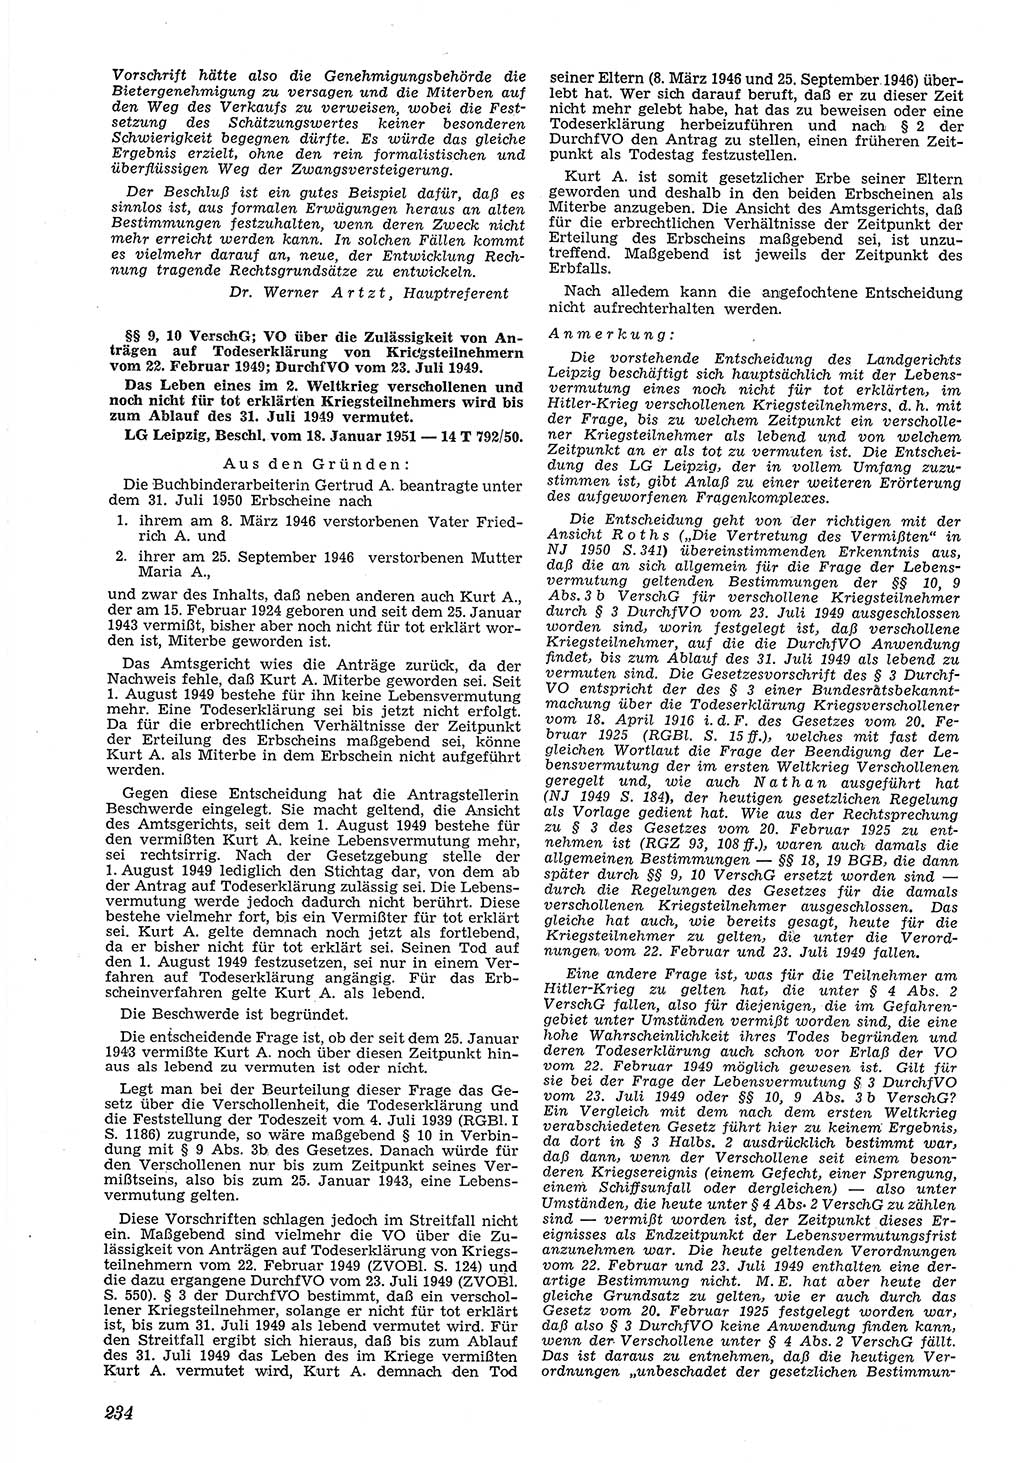 Neue Justiz (NJ), Zeitschrift für Recht und Rechtswissenschaft [Deutsche Demokratische Republik (DDR)], 5. Jahrgang 1951, Seite 234 (NJ DDR 1951, S. 234)